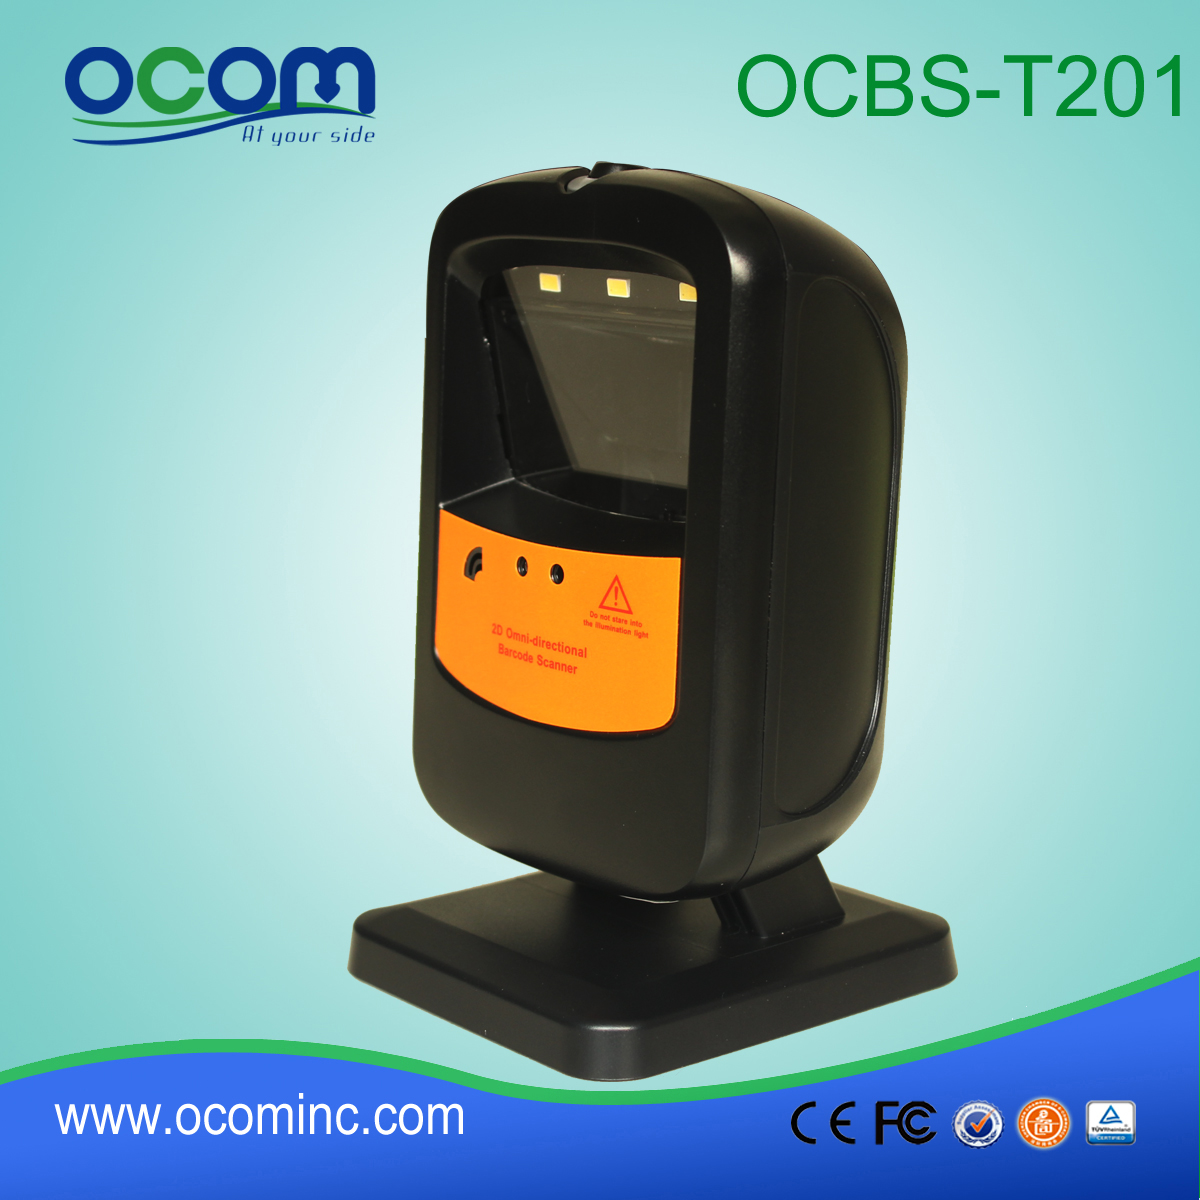 láser supermercado Omni distribuidor escáner de código de barras (OCBS-T201)